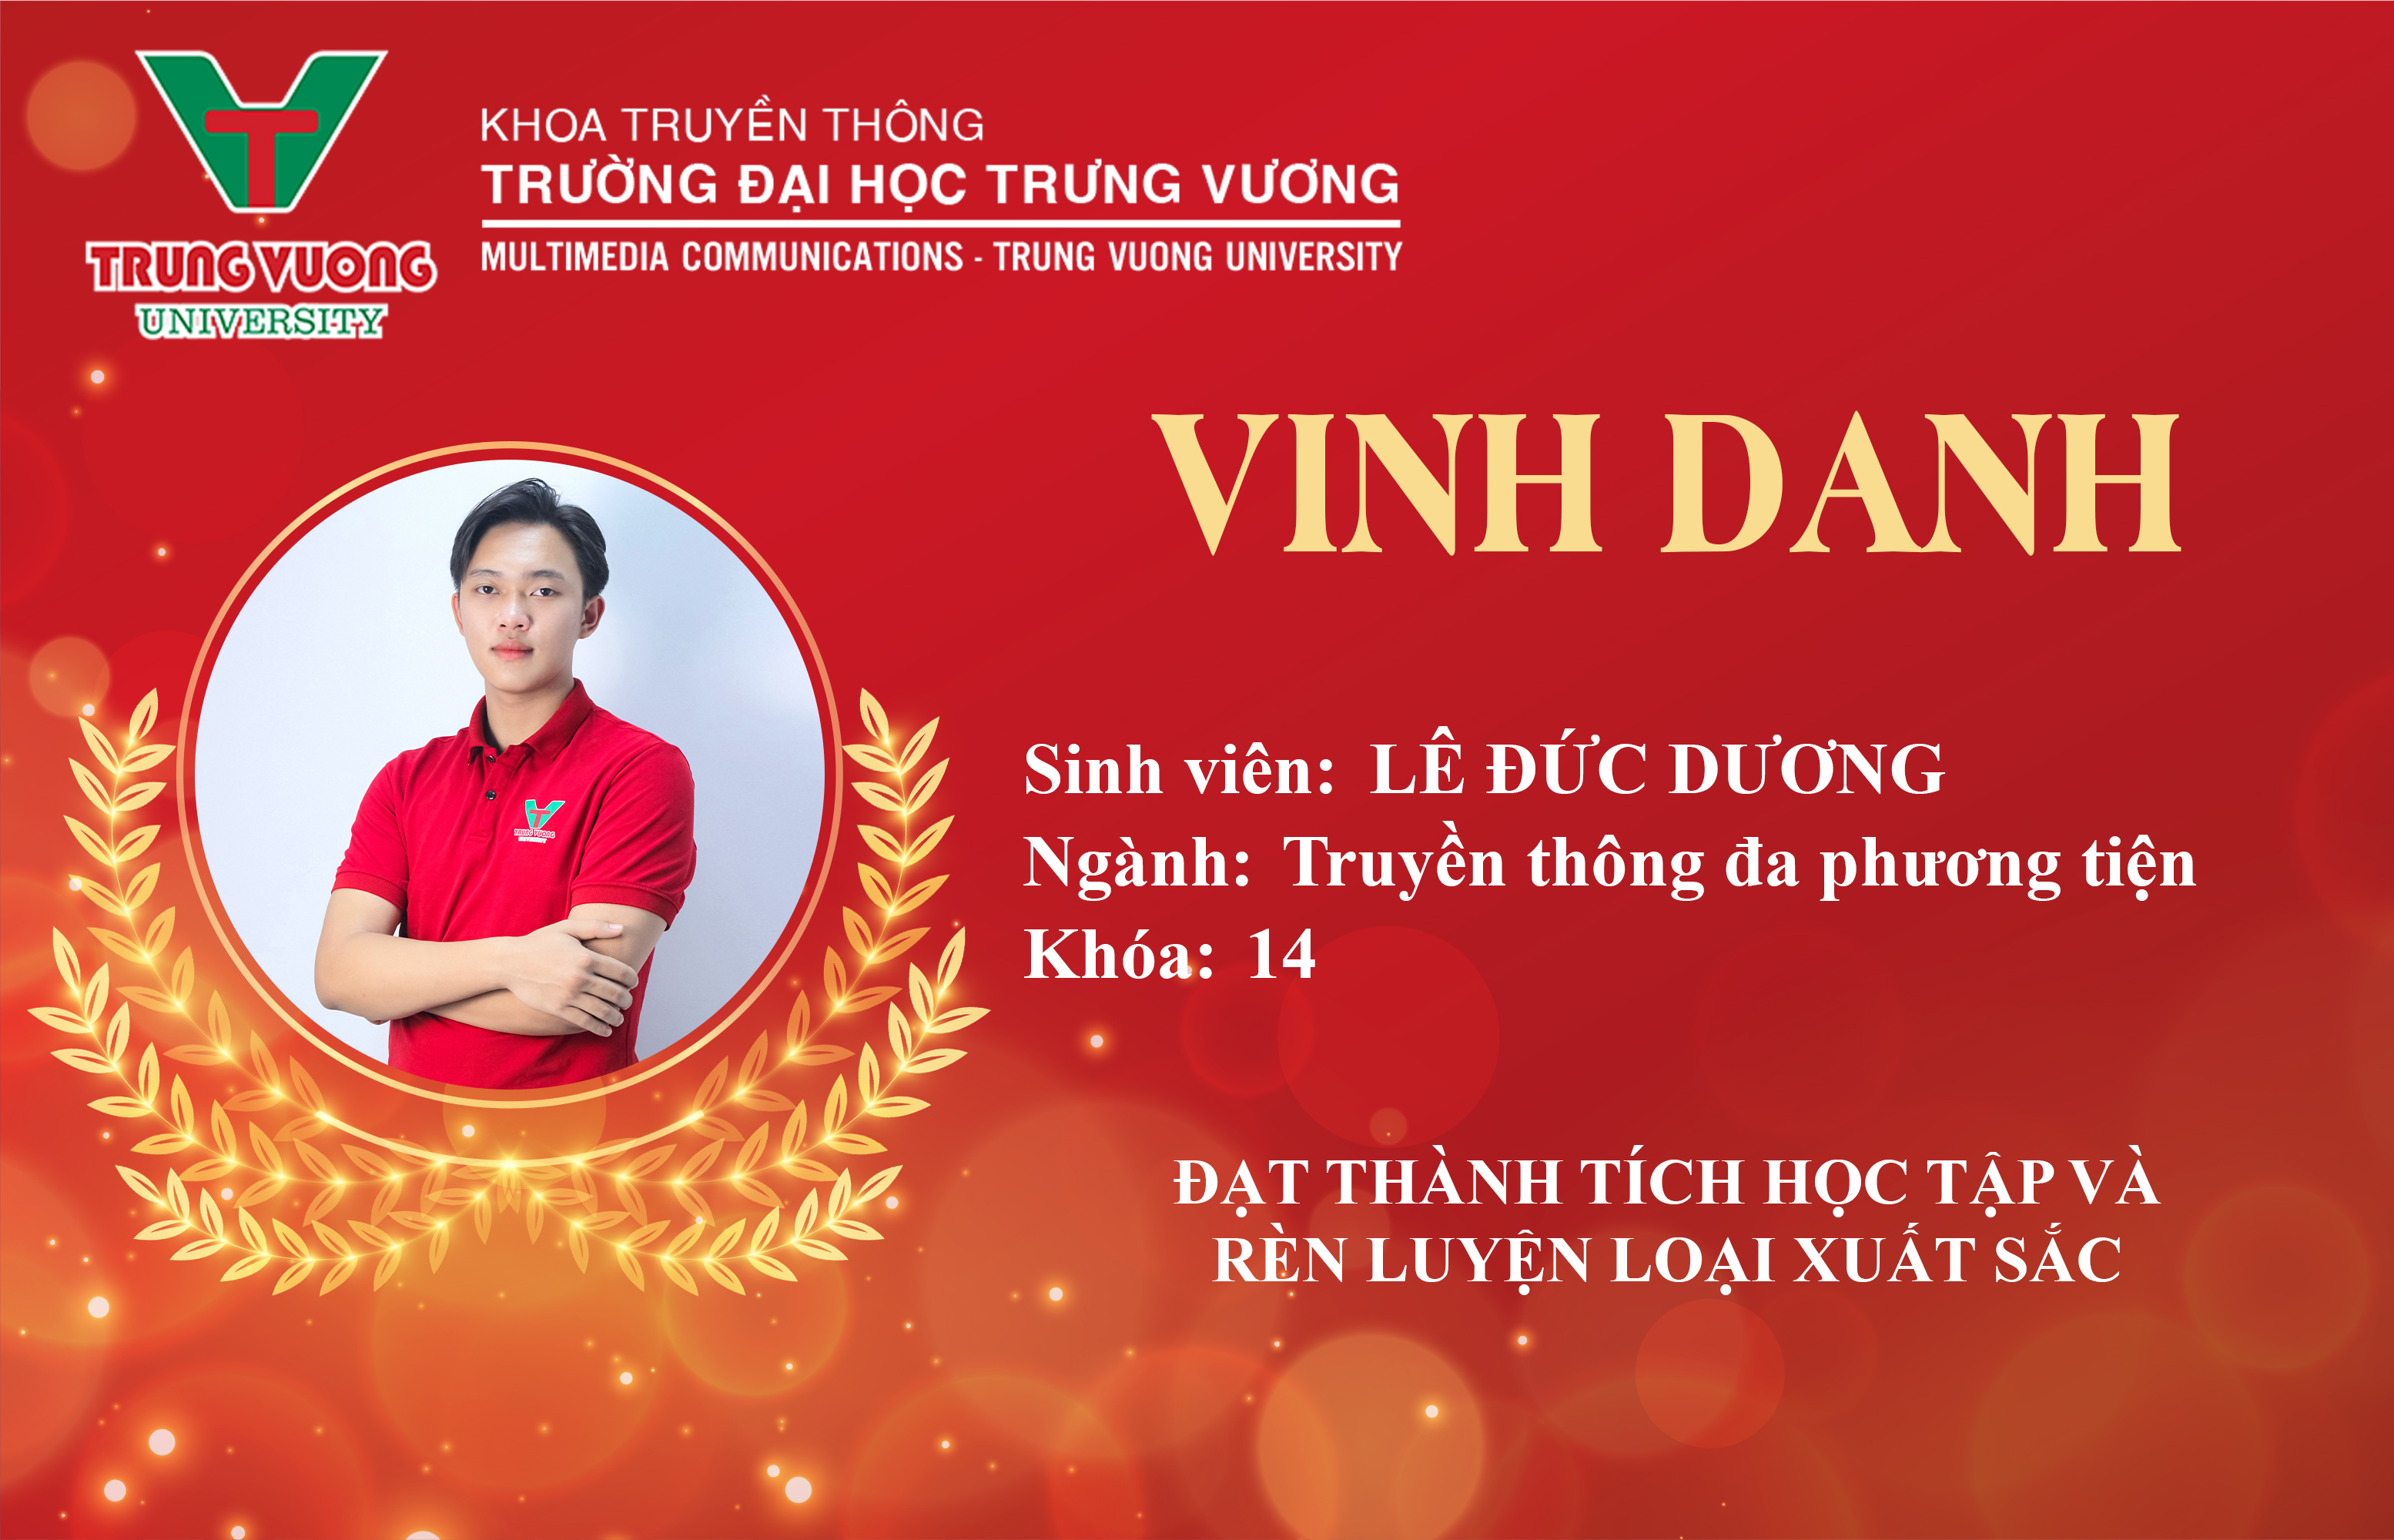 Vinh danh sinh viên Nguyễn Thị Minh Giang - Ngành Truyền thông đa phương tiện K14 và được Khoa trao tặng học bổng miễn 50% học phí học kỳ 2 năm học 2023 - 2024